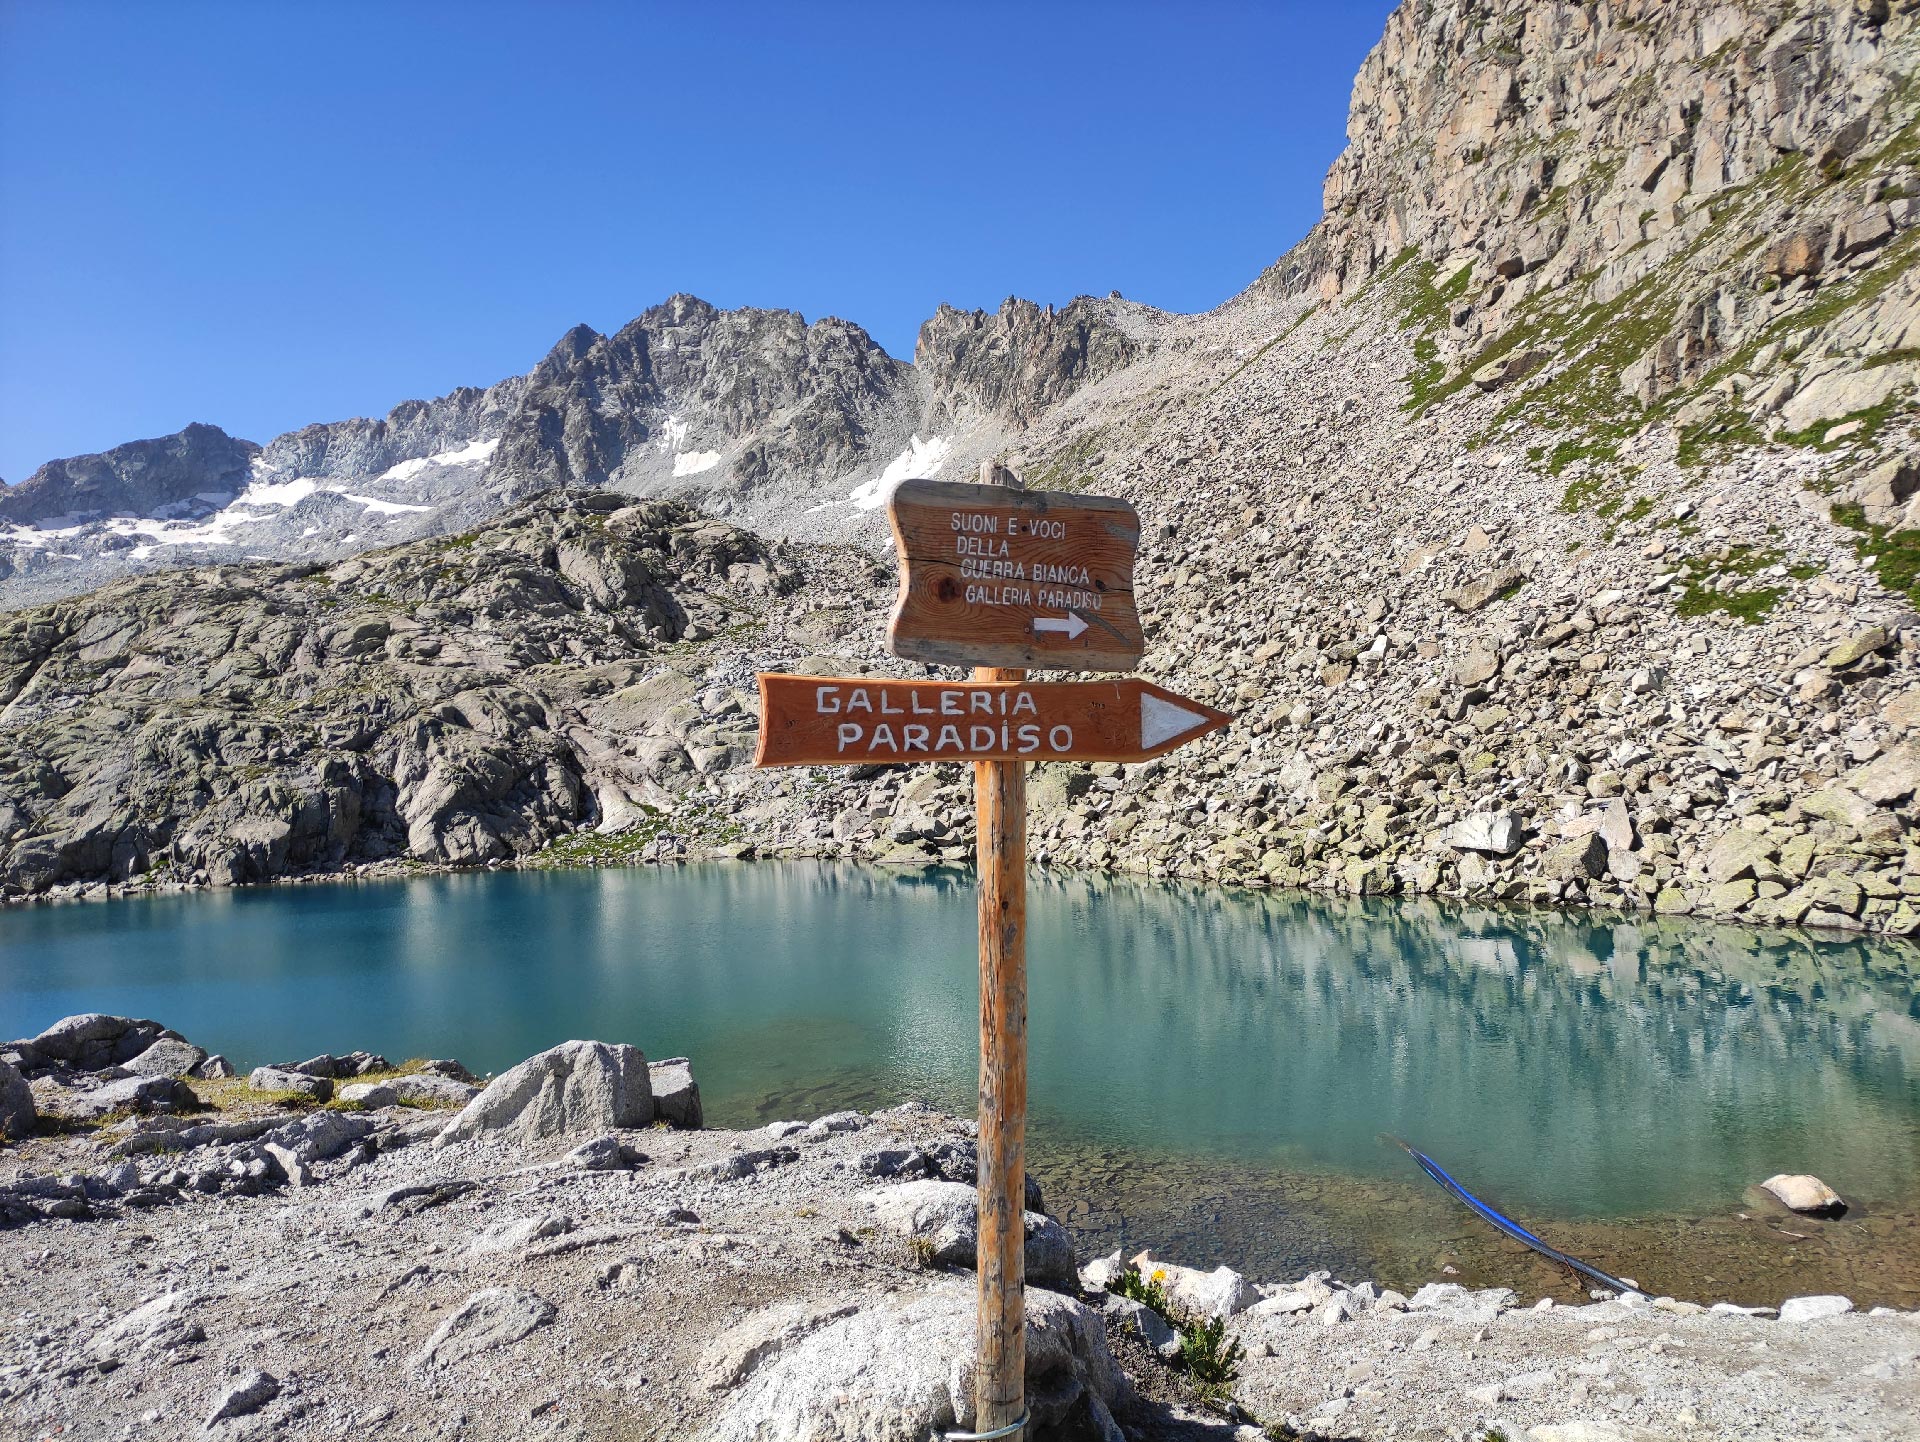 Il laghetto alpino dalle acque cristalline del Passo Paradiso, Tonale, Adamello